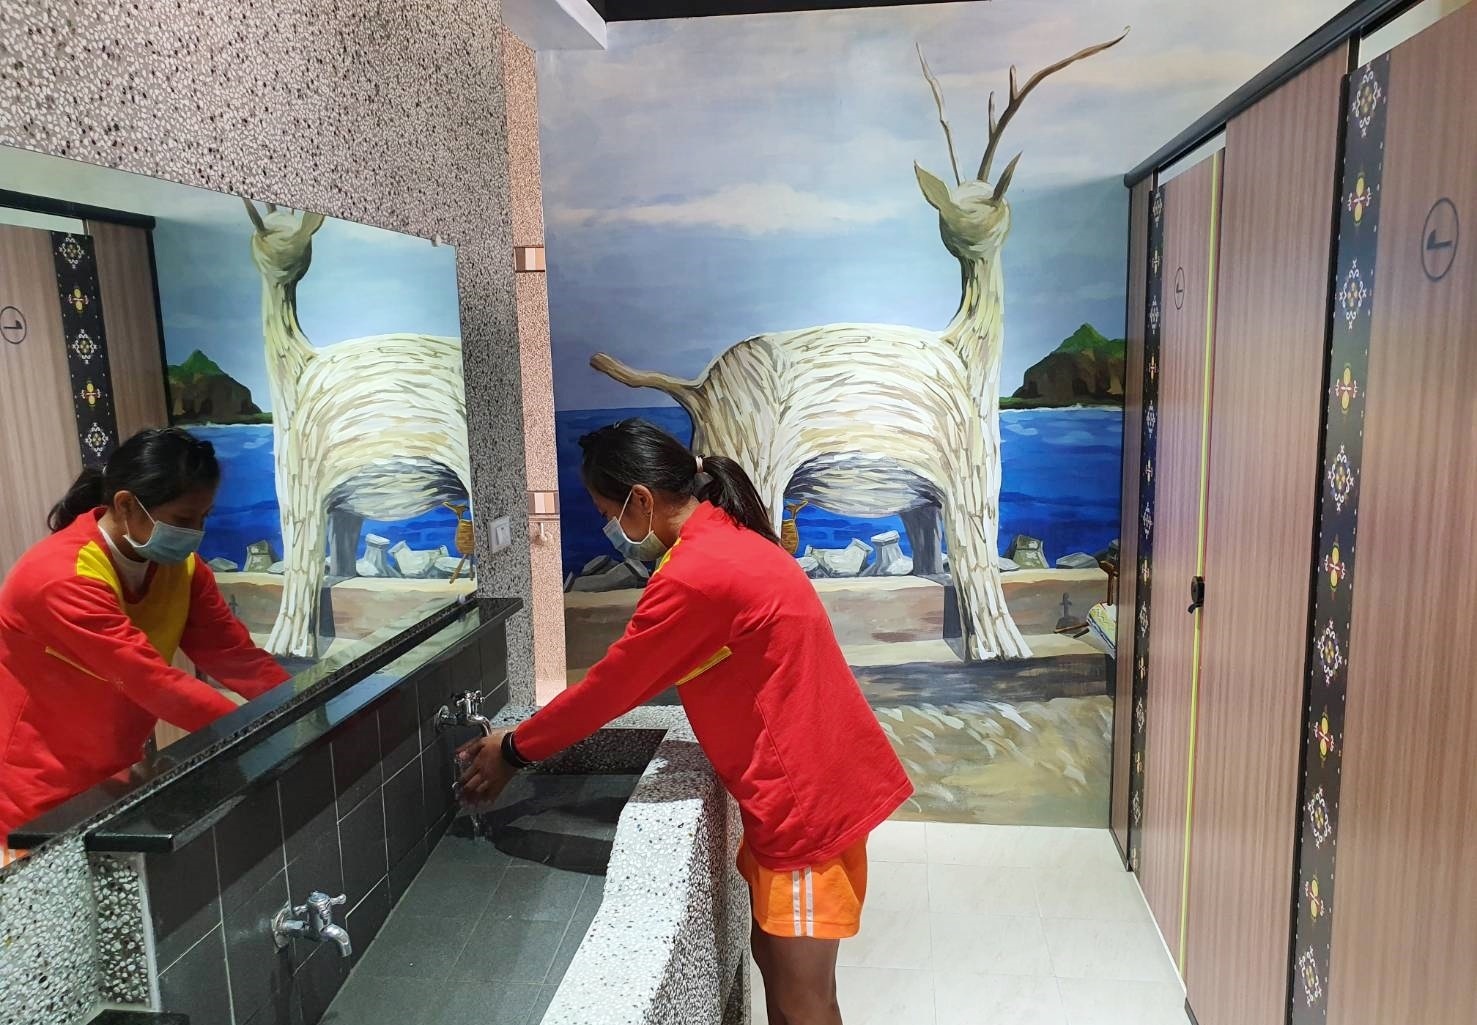 三仙國小新廁所設計中串聯阿美族圖騰與色彩，並將三仙臺日出、比西里岸著名的漂流木羊地景彩繪上牆面，走進廁所就能感受東海岸人文景致。